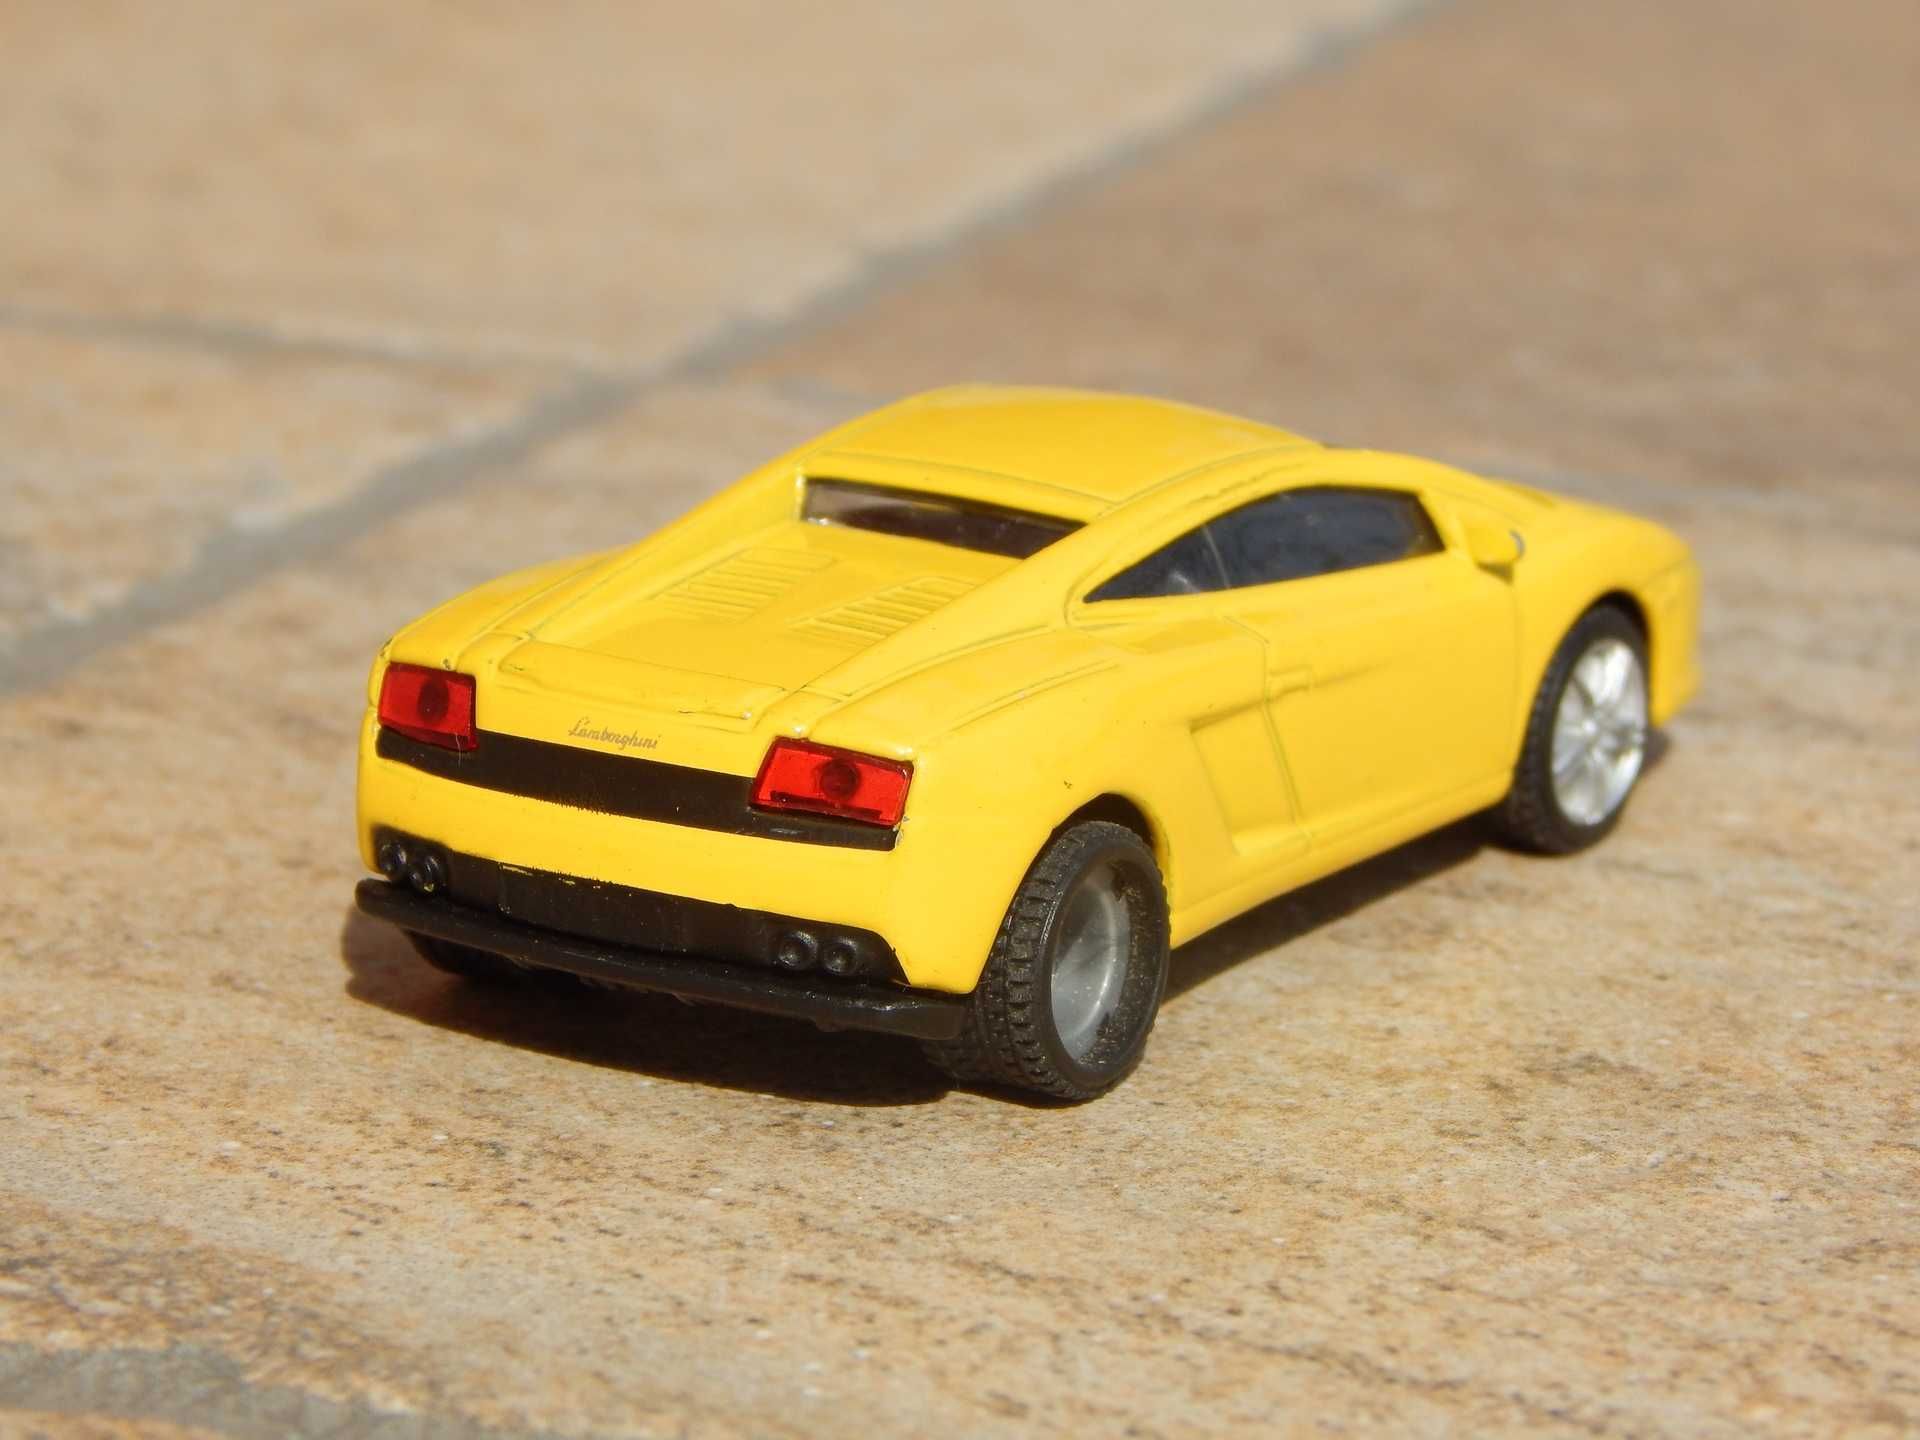 Macheta Lamborghini Gallardo sc 1:64 Siku uzata